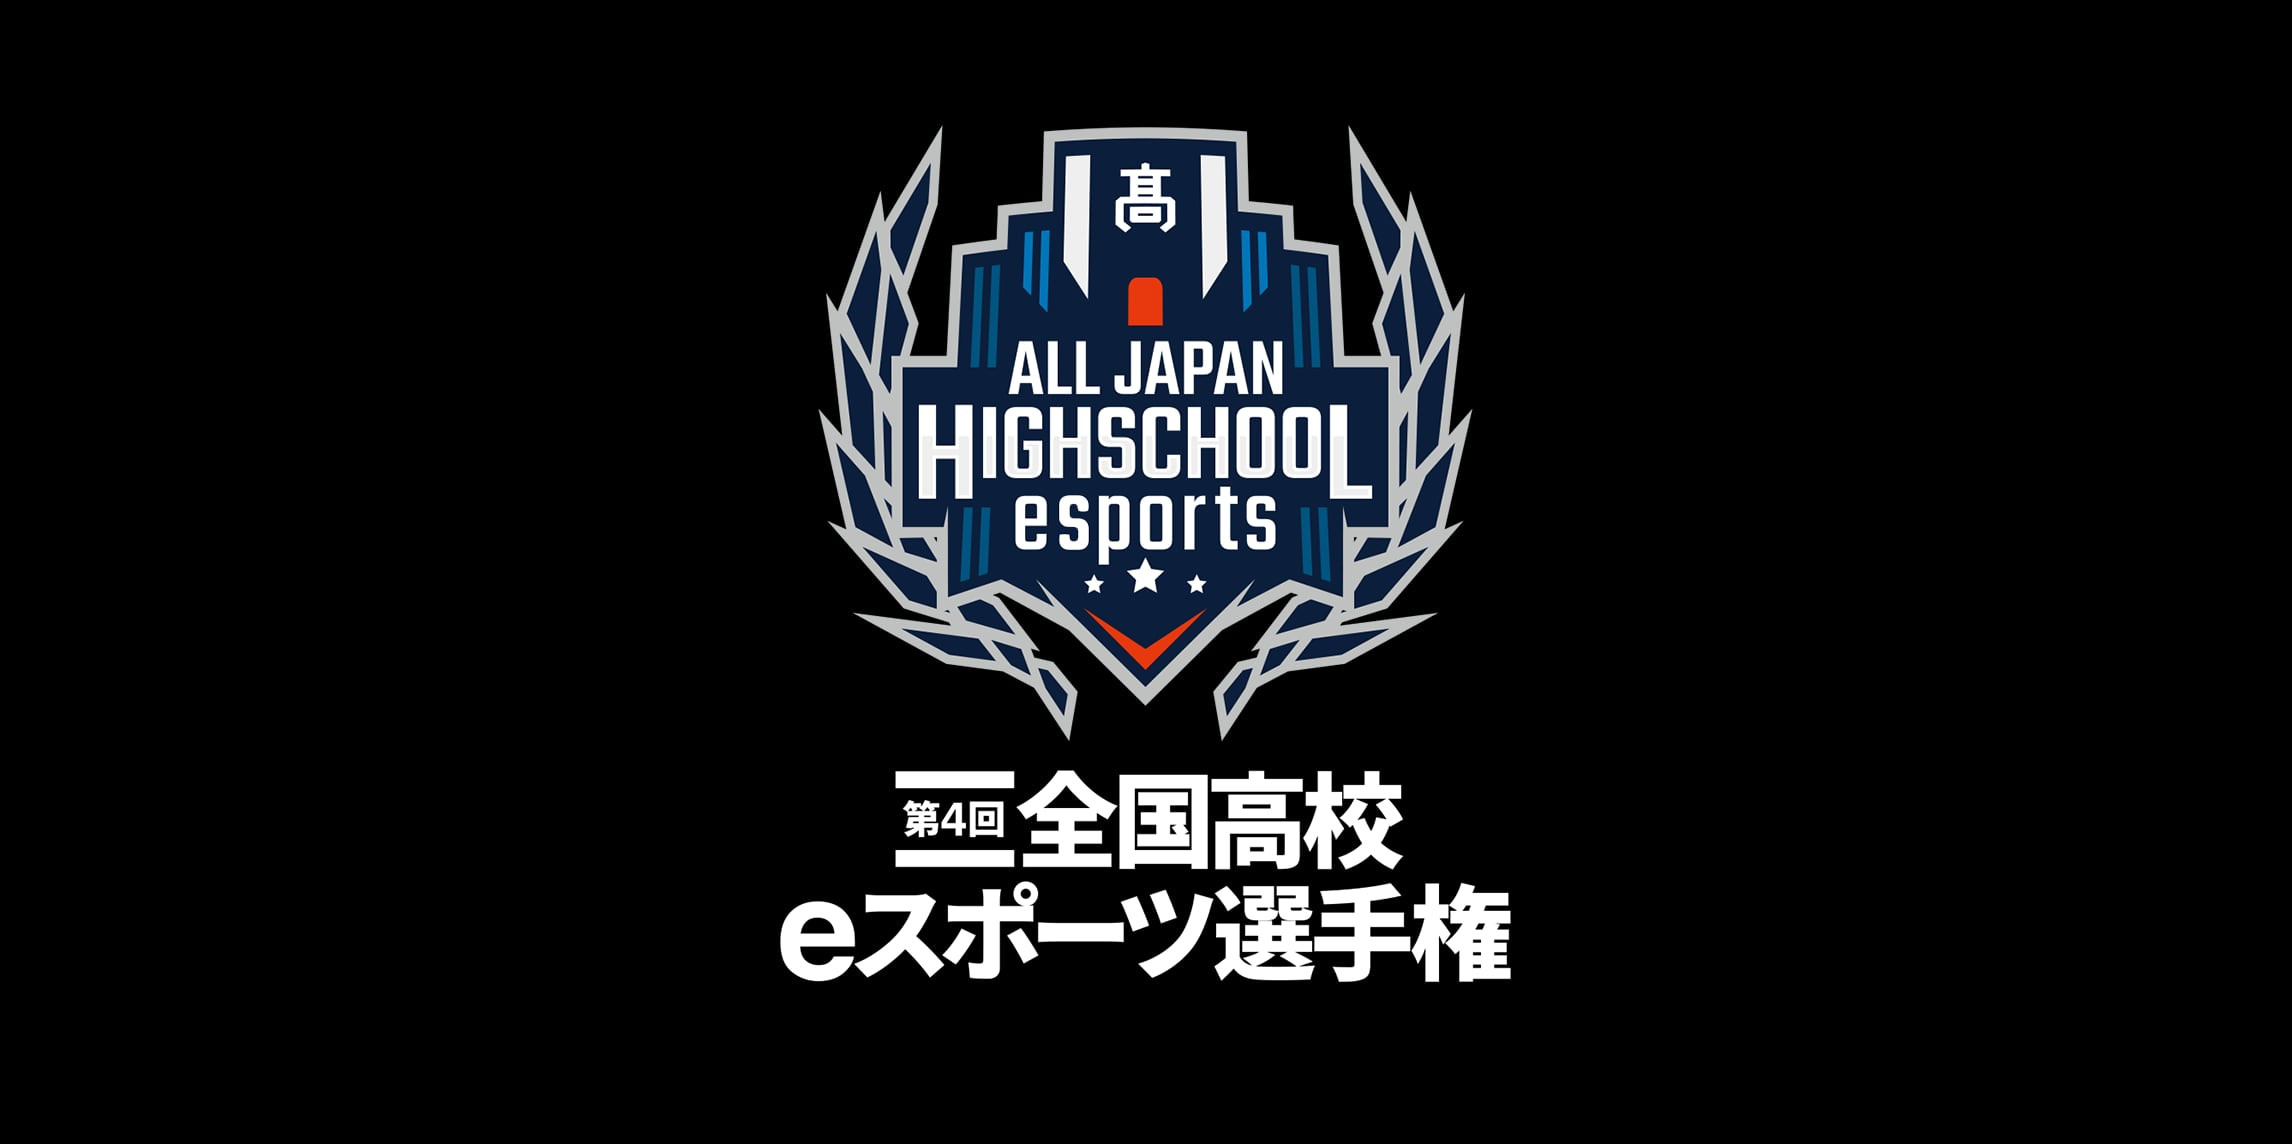 【大会情報】第4回全国高校eスポーツ選手権 ロケットリーグ部門 決勝大会【2021年12月25日】